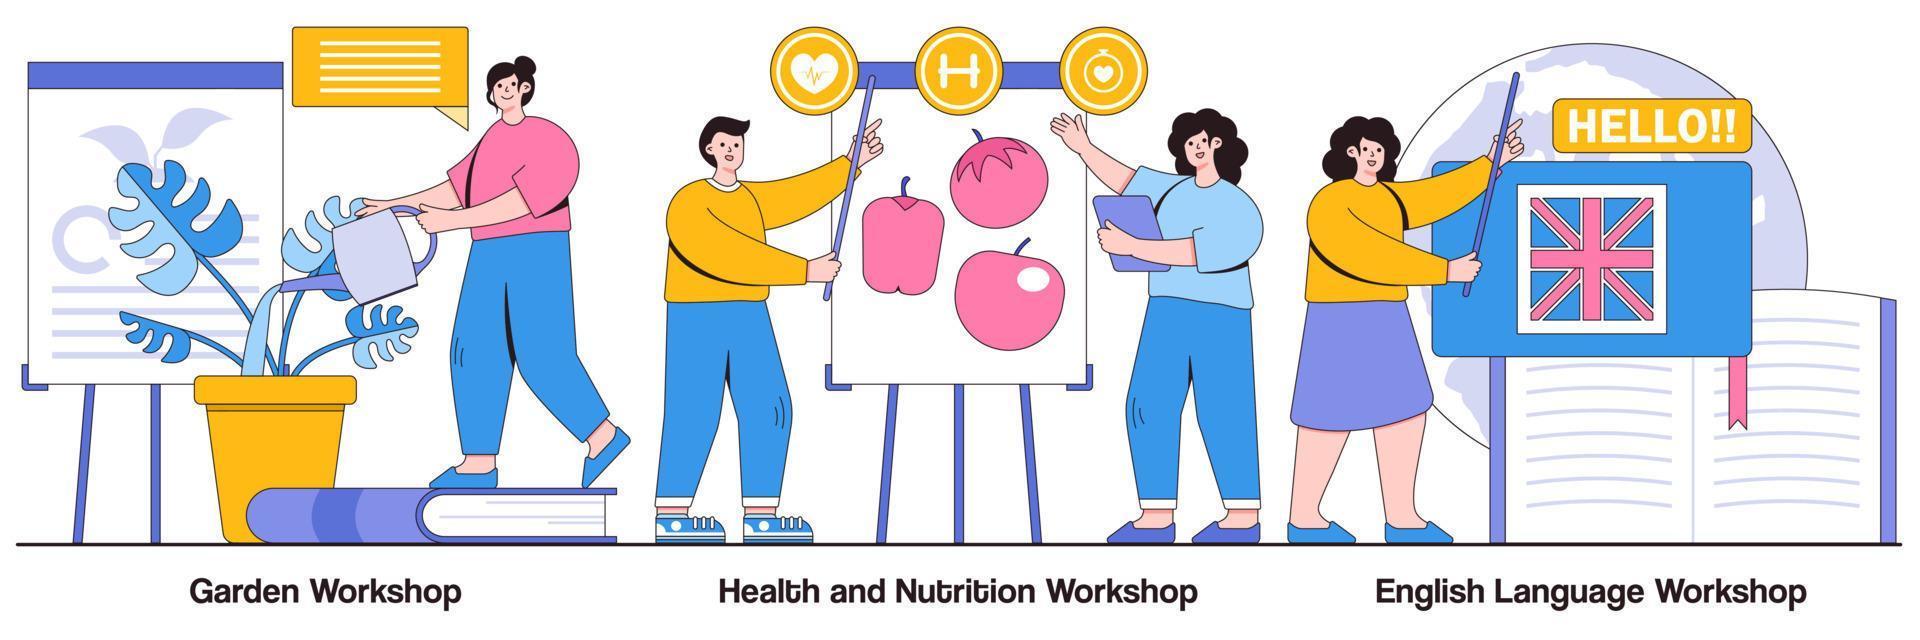 Garten-Workshop, Gesundheits- und Ernährungs-Workshop, Fremdsprachen-Workshop, illustriertes Paket vektor